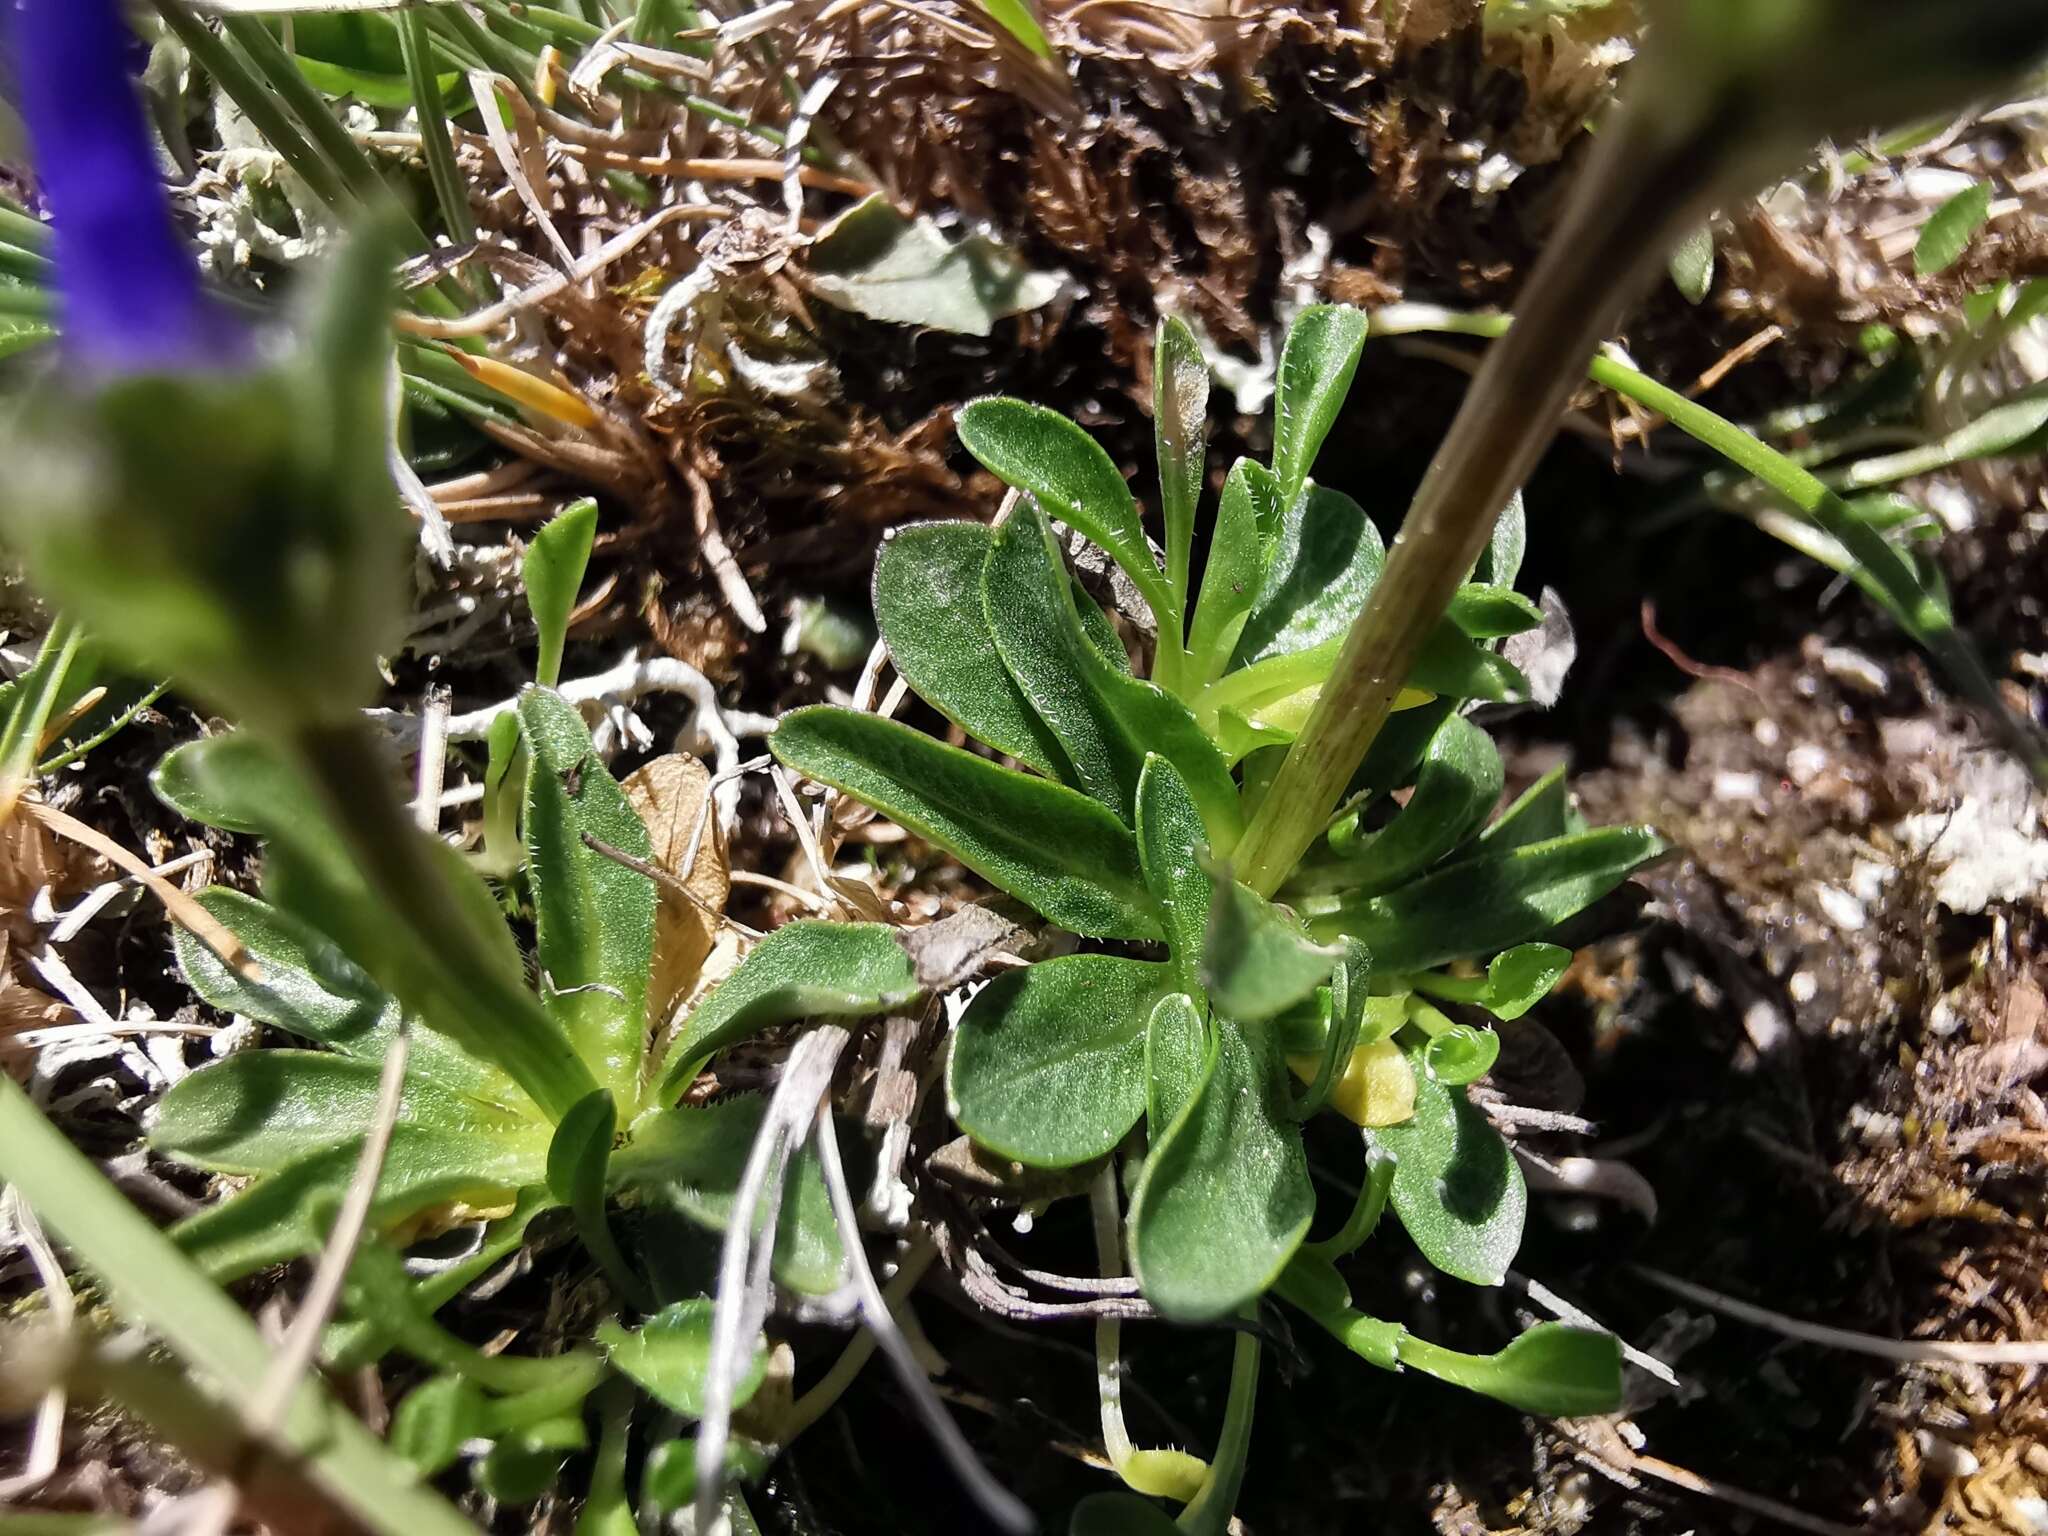 Sivun Phyteuma globulariifolium Sternb. & Hoppe kuva